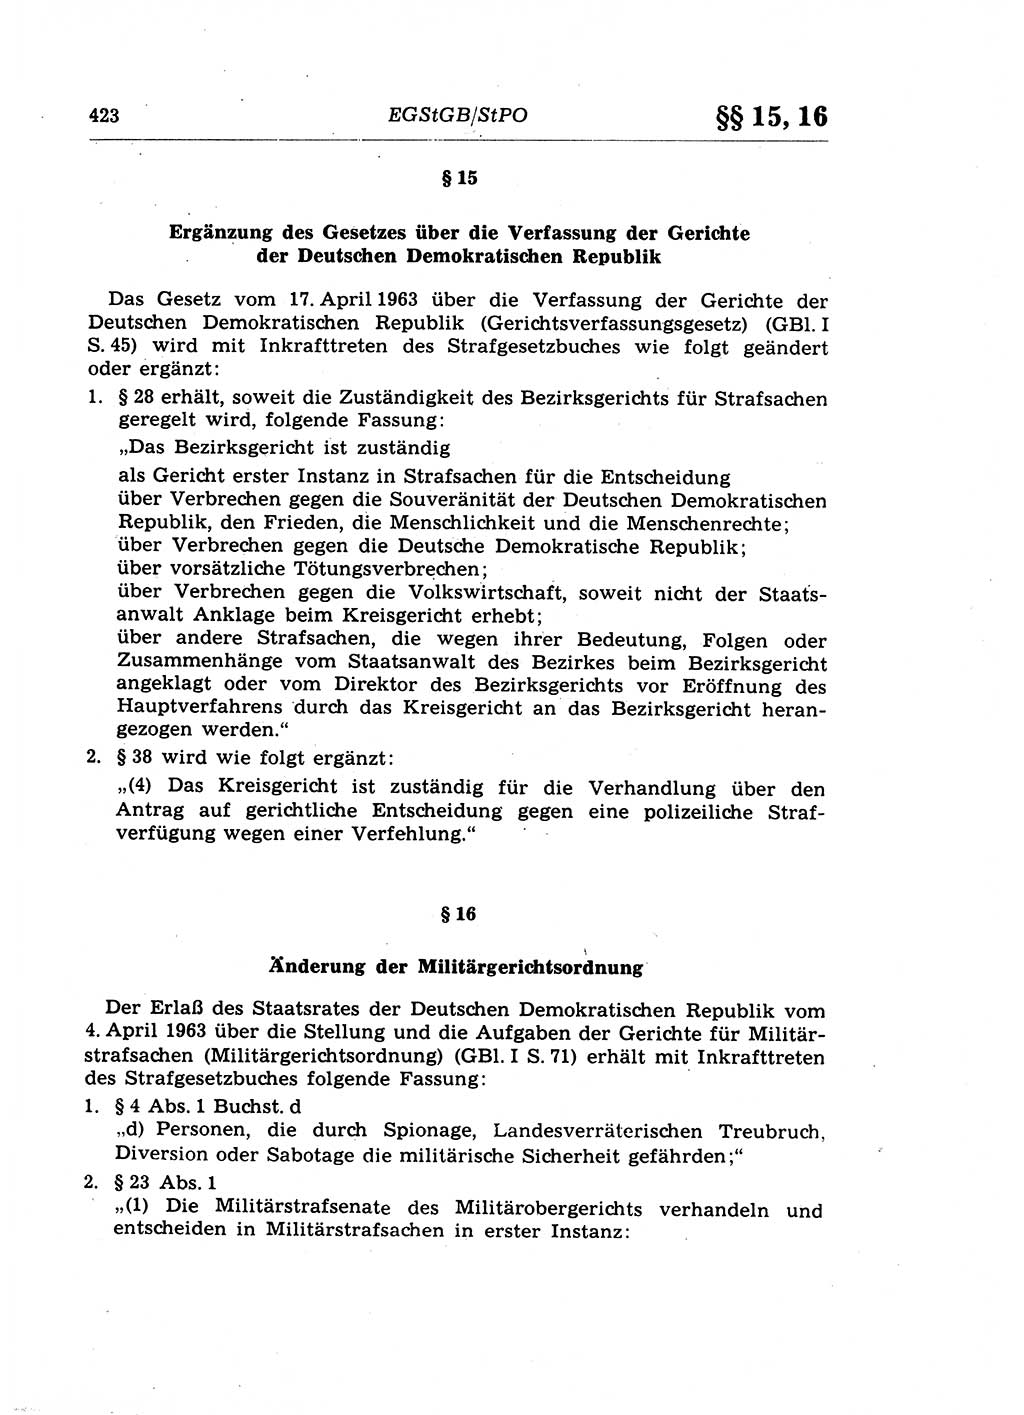 Strafprozeßrecht der DDR (Deutsche Demokratische Republik), Lehrkommentar zur Strafprozeßordnung (StPO) 1968, Seite 423 (Strafprozeßr. DDR Lehrkomm. StPO 19688, S. 423)